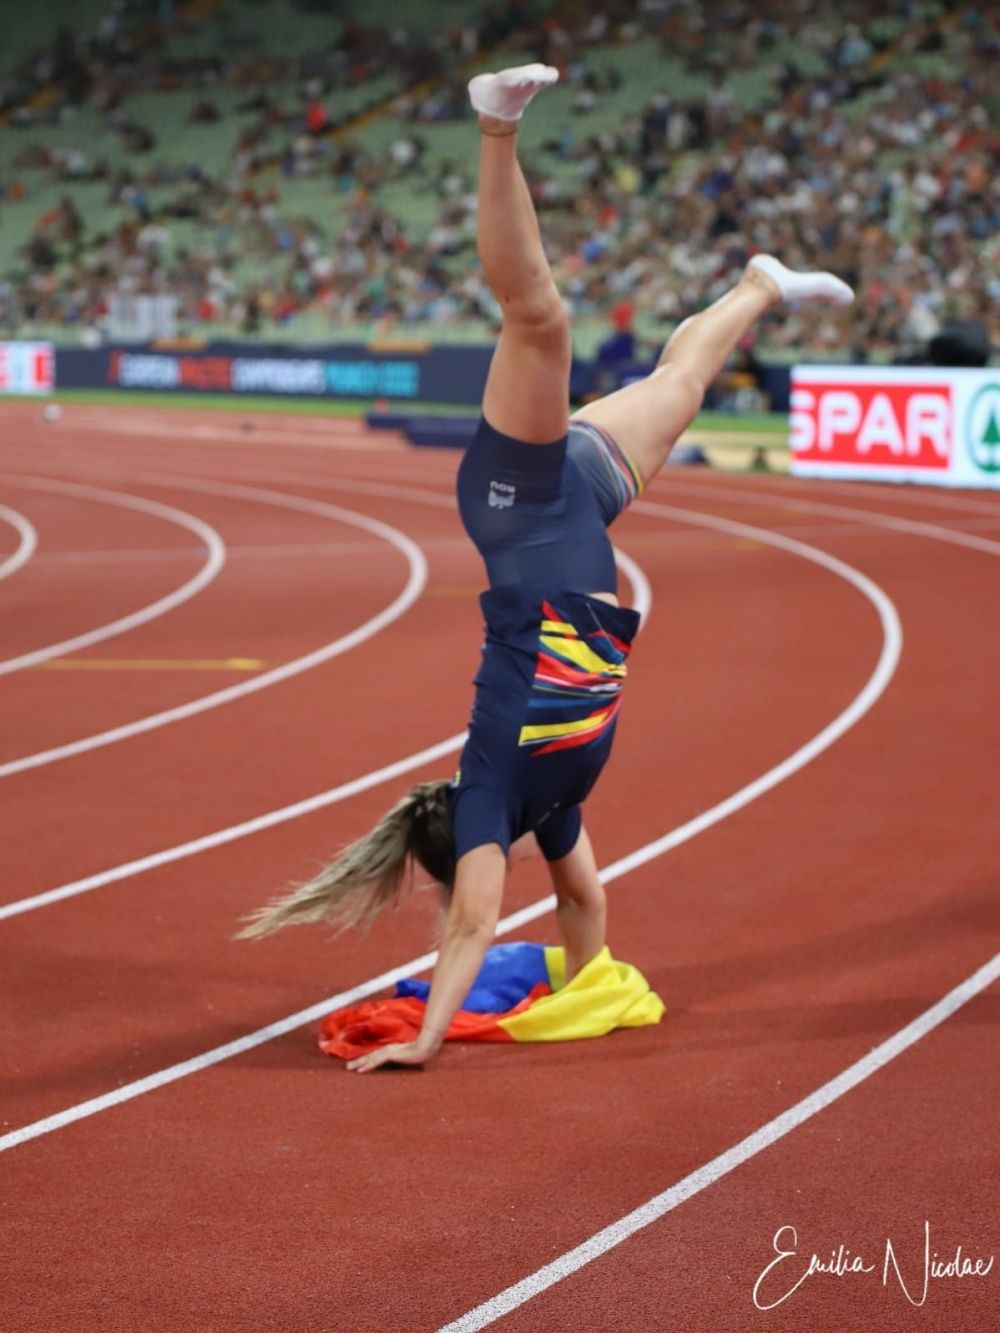 Bianca Perie Ghelber a atins un rezultat uriaș în 2022 și a câștigat titlul "Atleta anului" în România_18